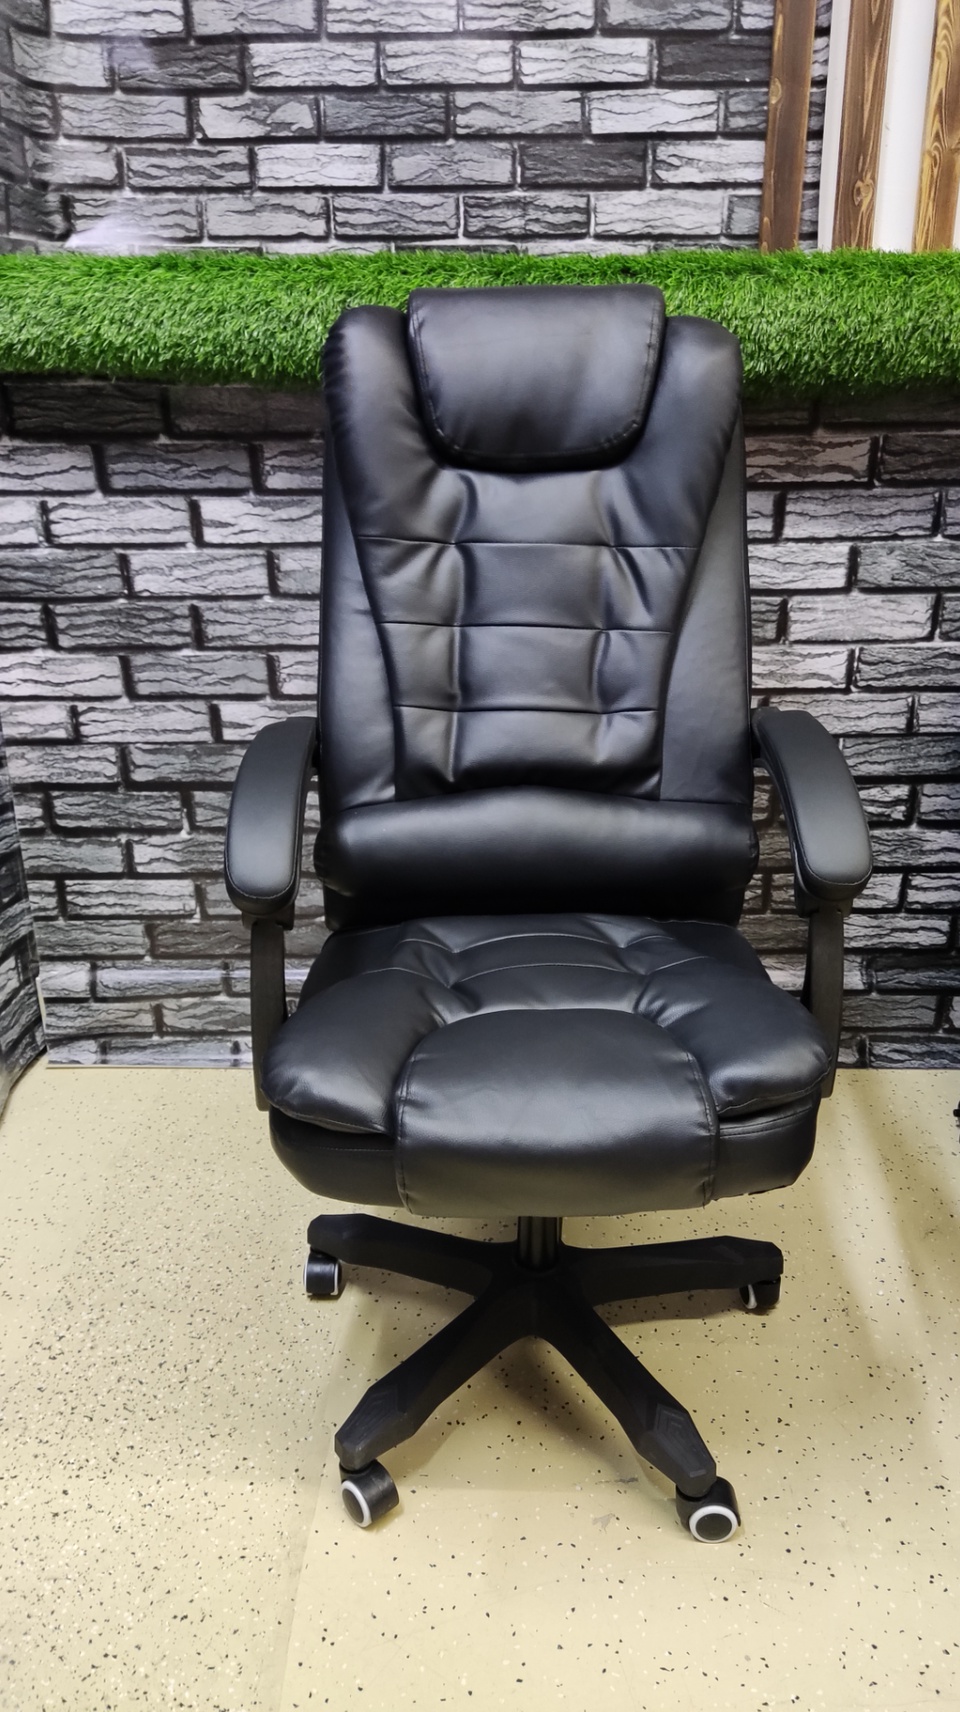 Кресло офисное - 13 000 ₽, заказать онлайн.